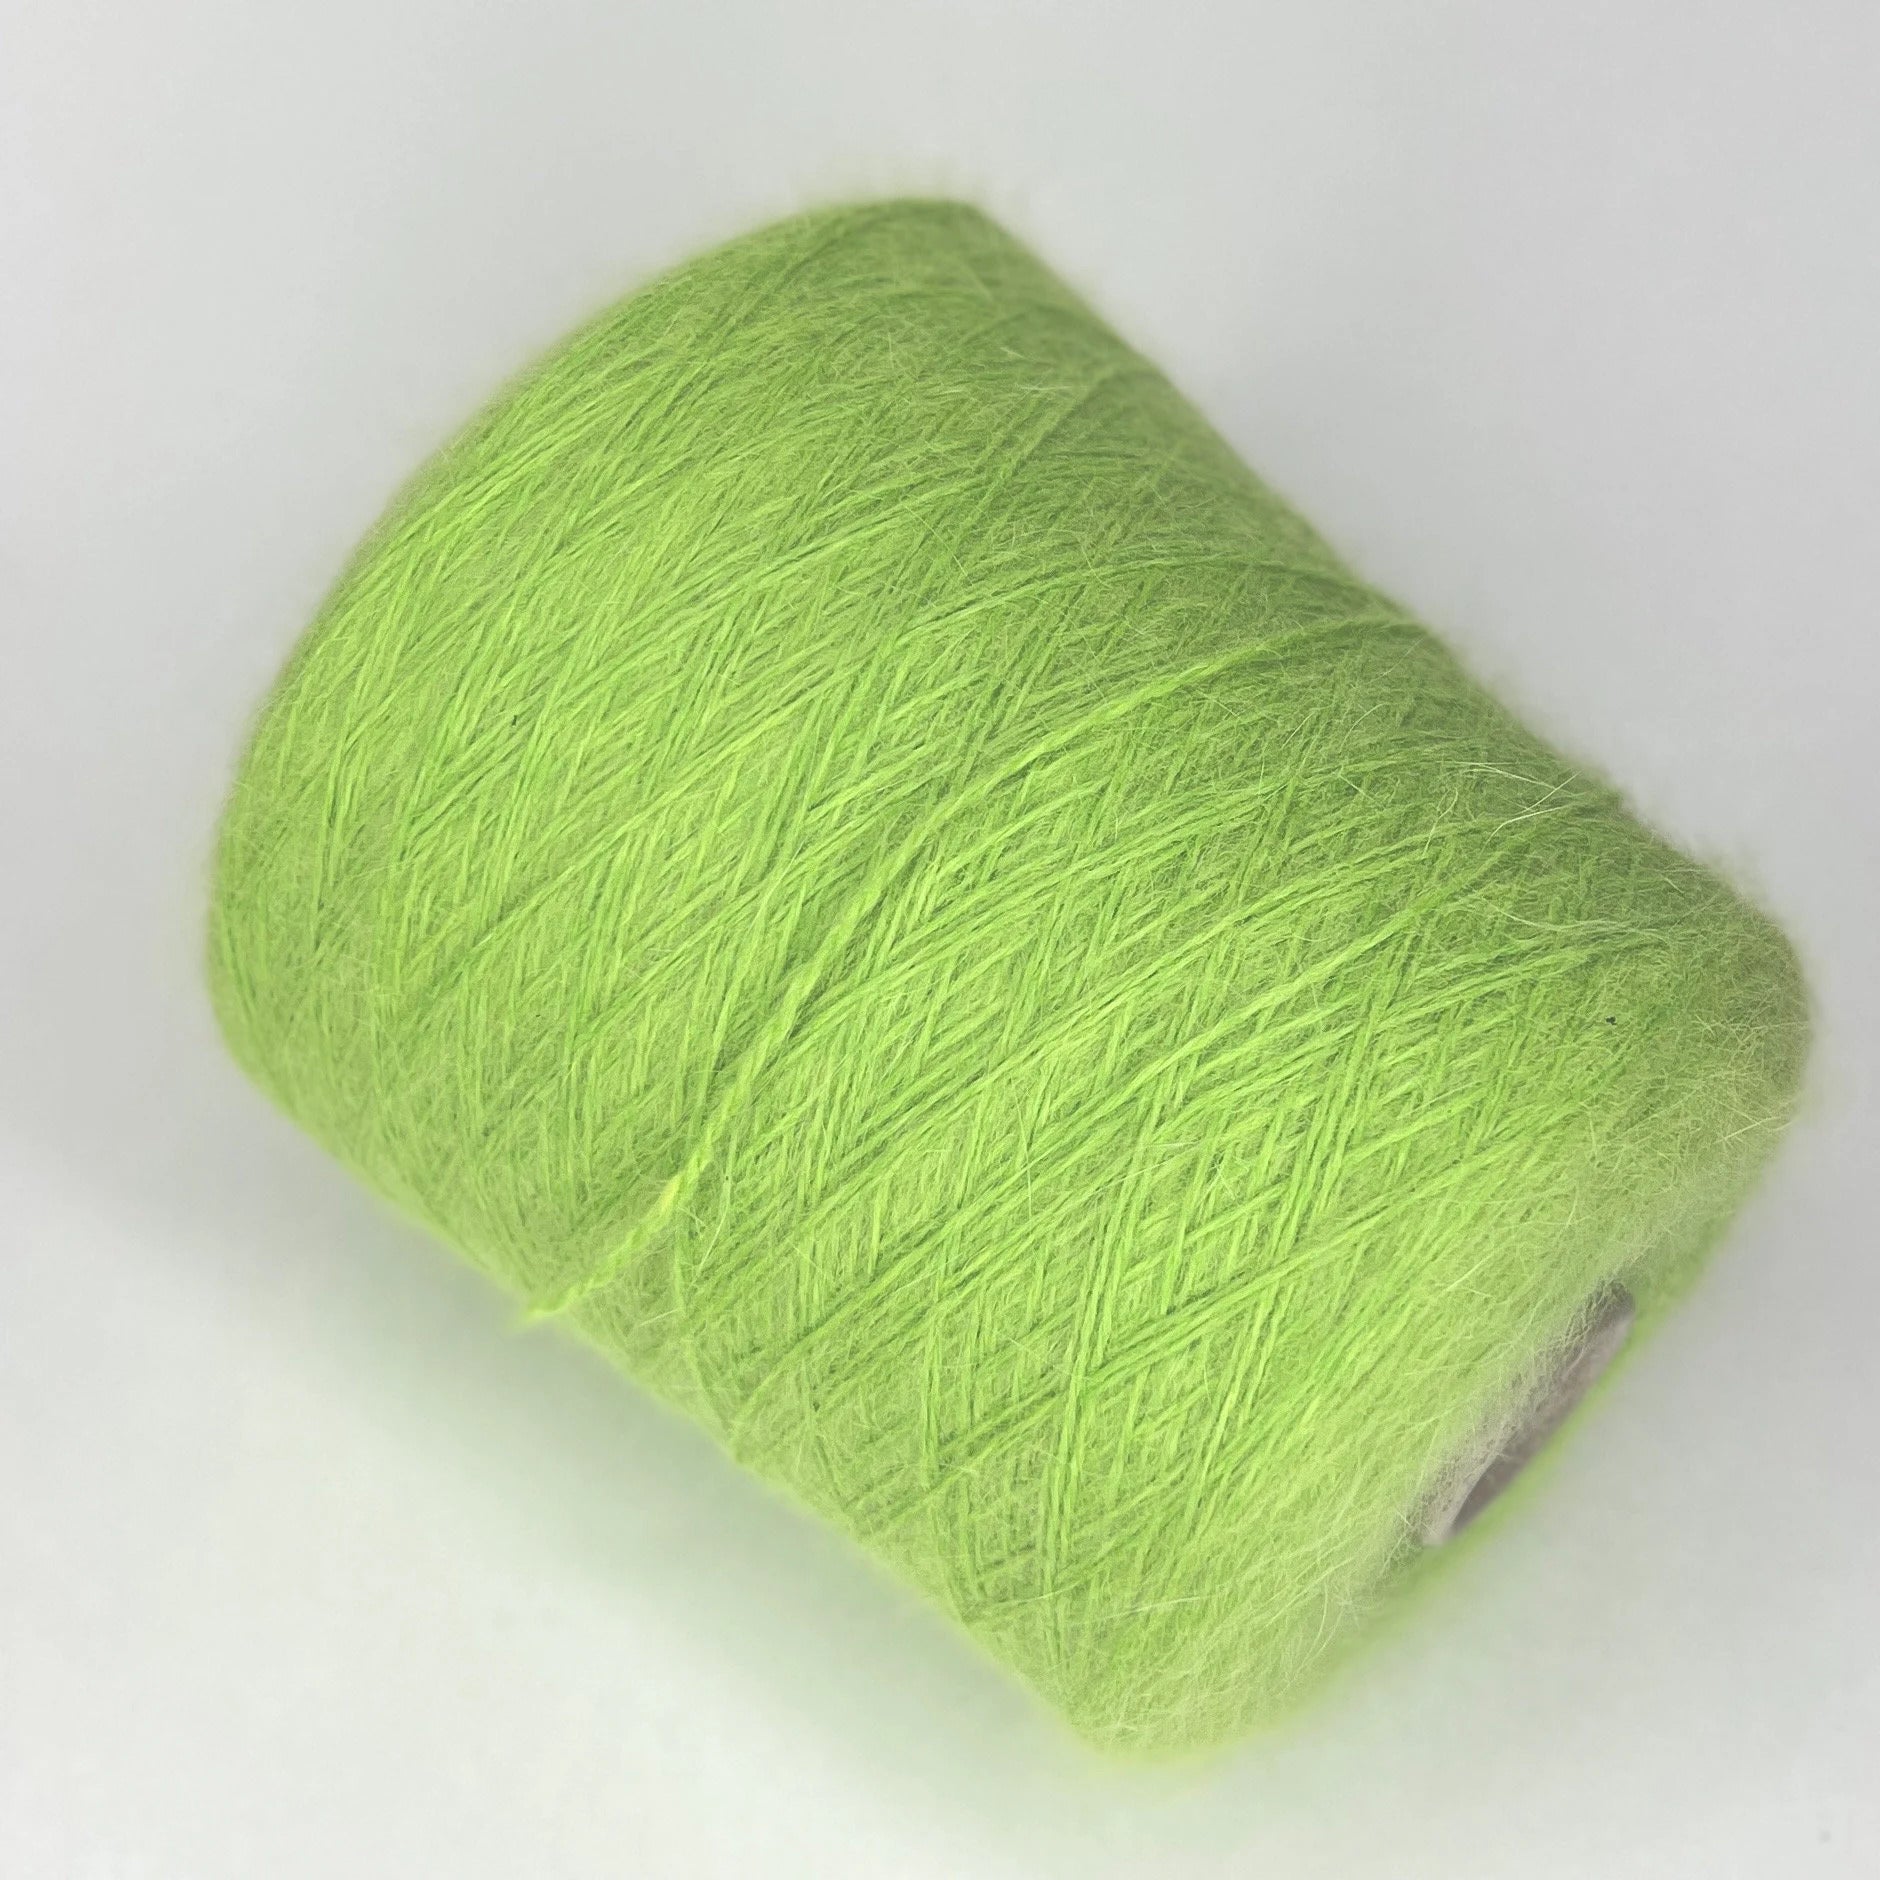 Angora 100% Yarn Wool Yarn Wool 10g -  Finland